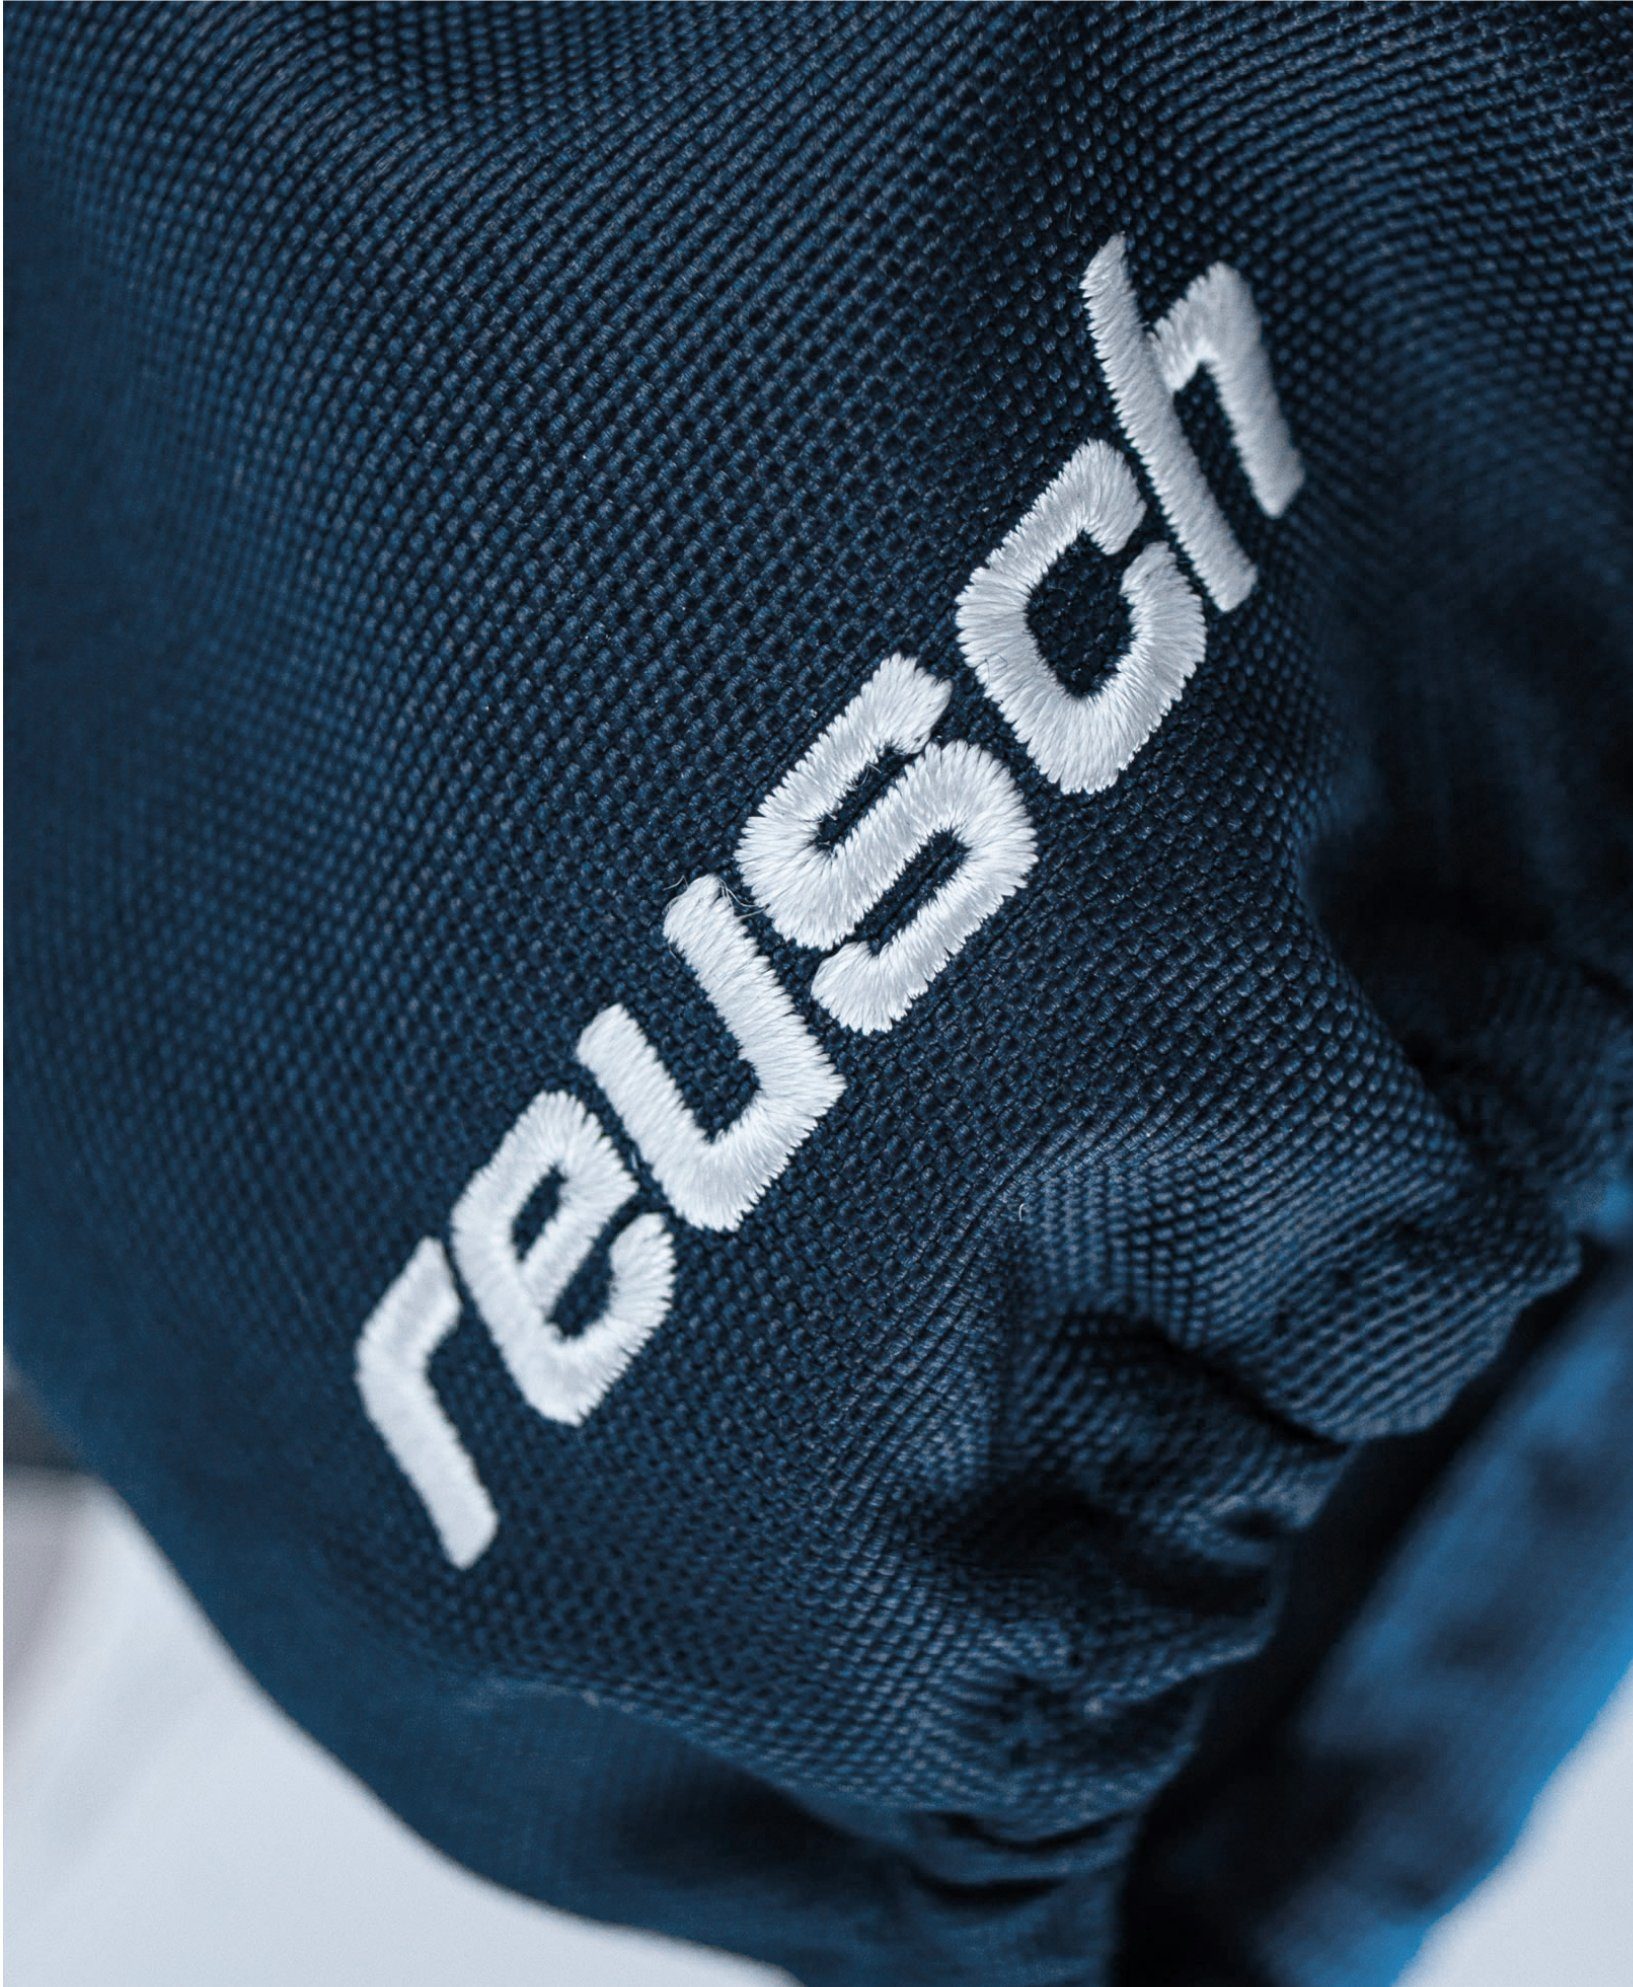 Reusch Snowboardhandschuhe Mitten 4458 blue Lucky bl brilliant / Reusch XT R-TEX® dress